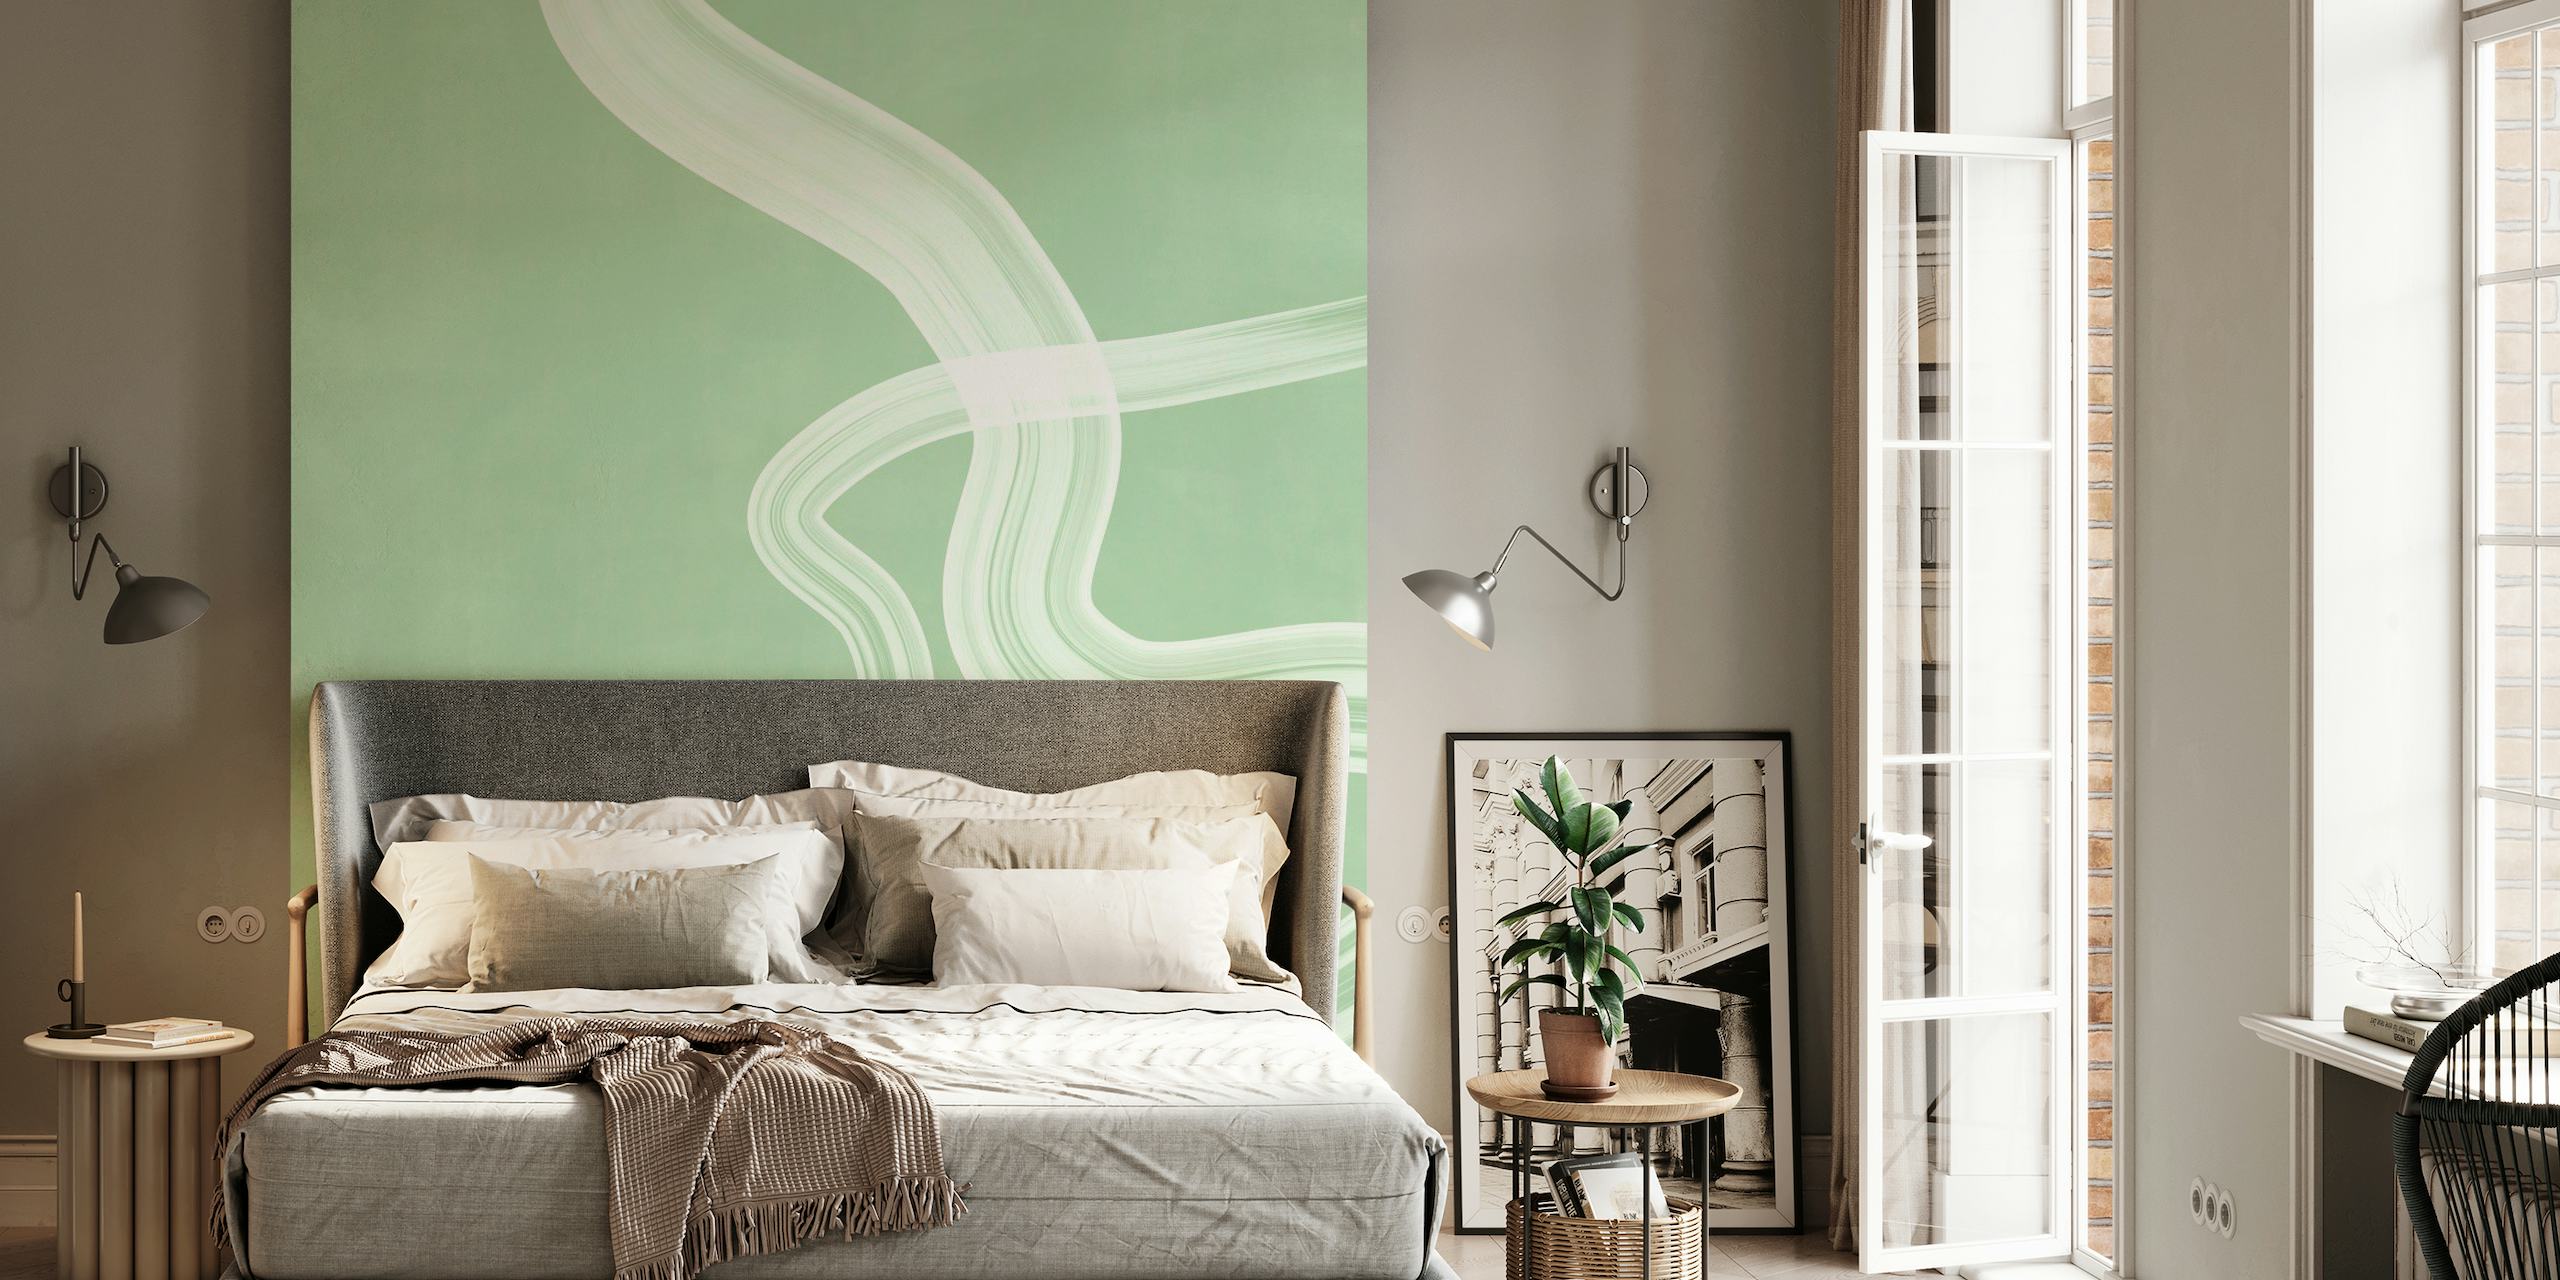 Fotomural de pared verde suave con diseño abstracto de líneas onduladas